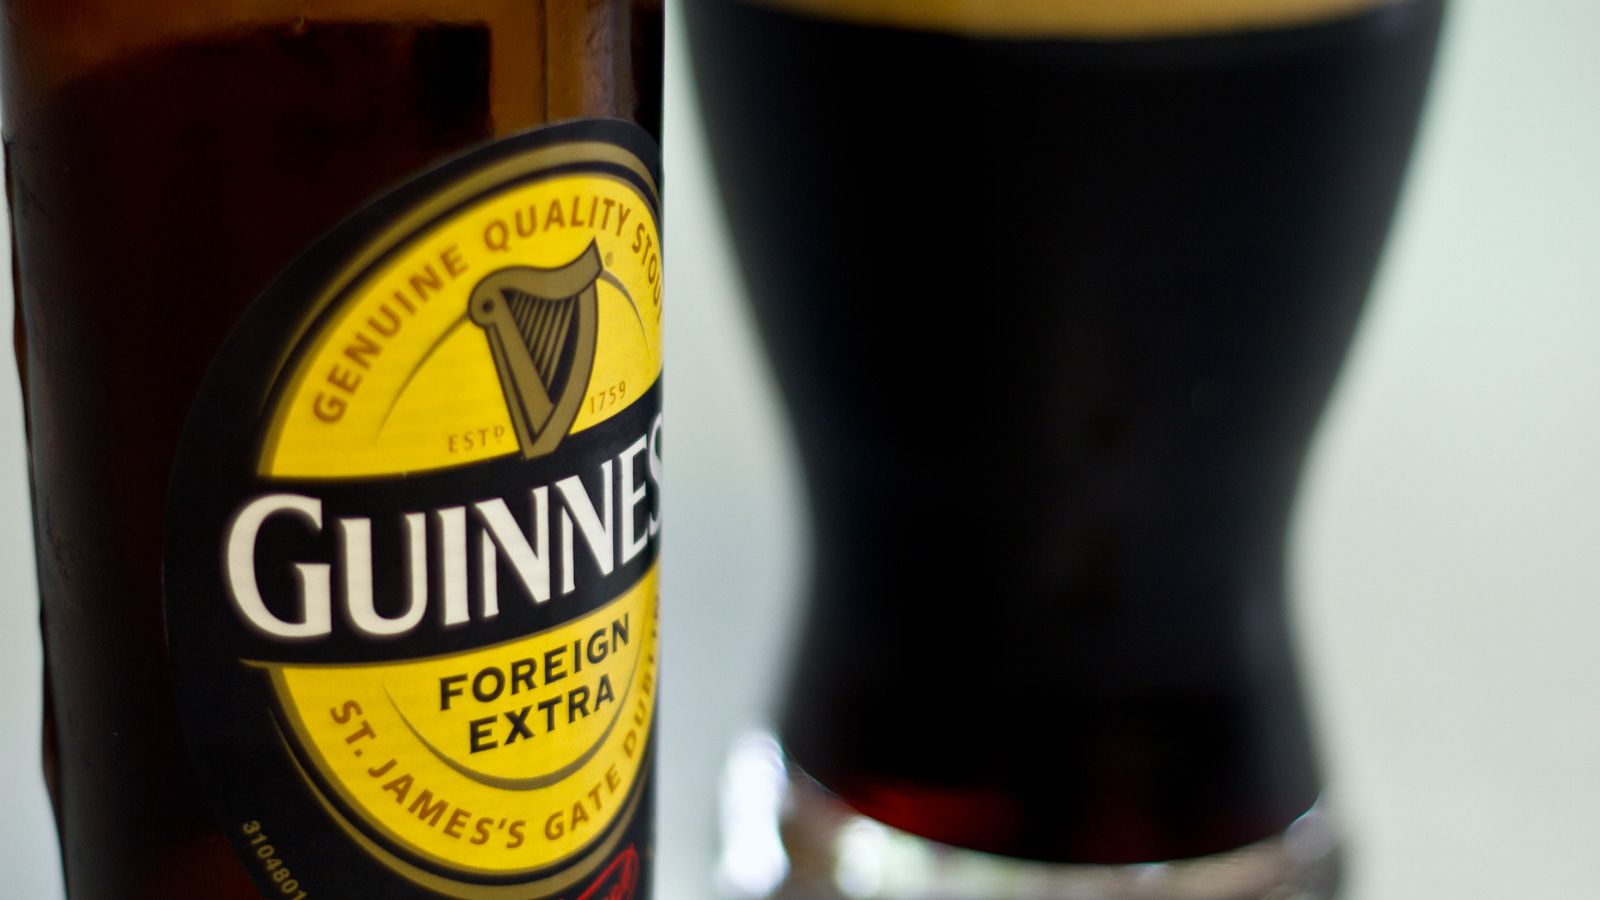 Old v New Guinness Glass : r/Guinness